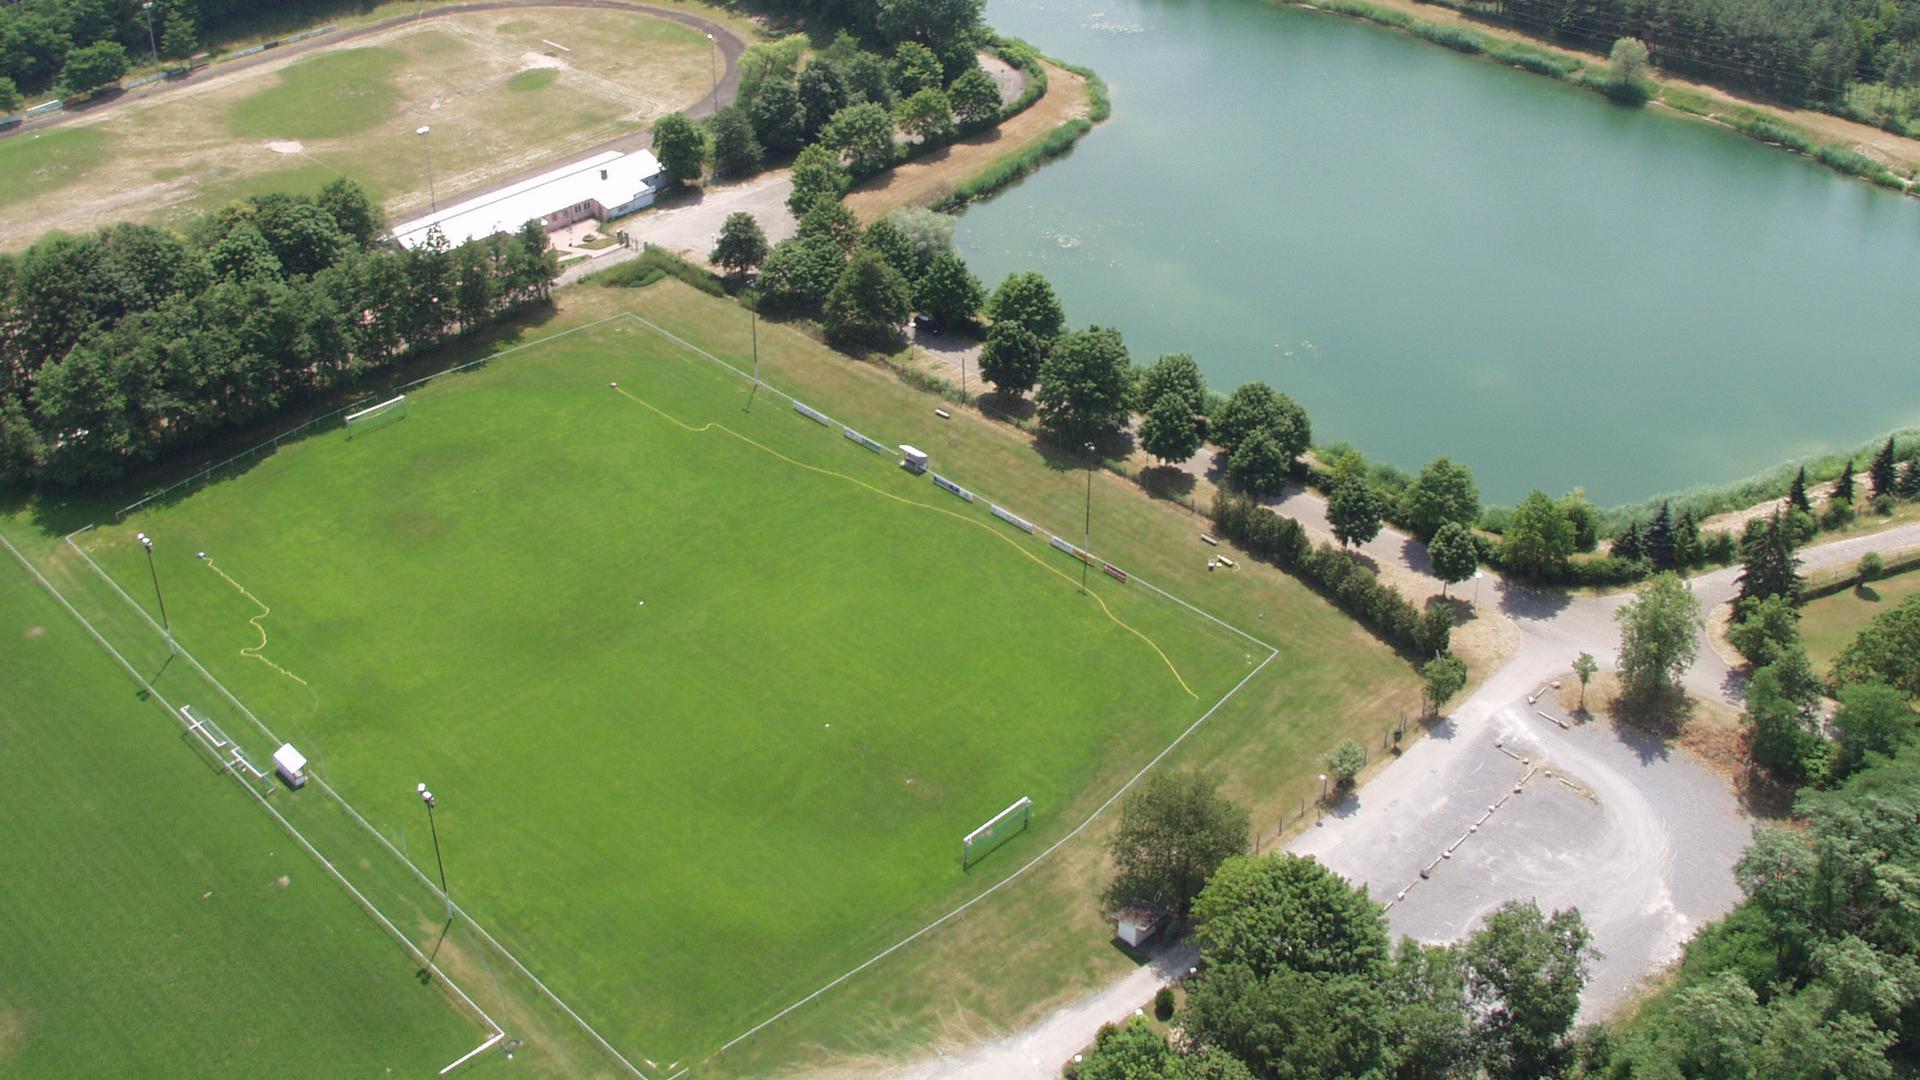 Der Aufsichtsrat des Klinikums Mittelbaden empfiehlt, das neue Zentralklinikum am Münchfeldsee in Rastatt zu bauen. Der Fußballverein RSC/DJK müsste dafür weichen.